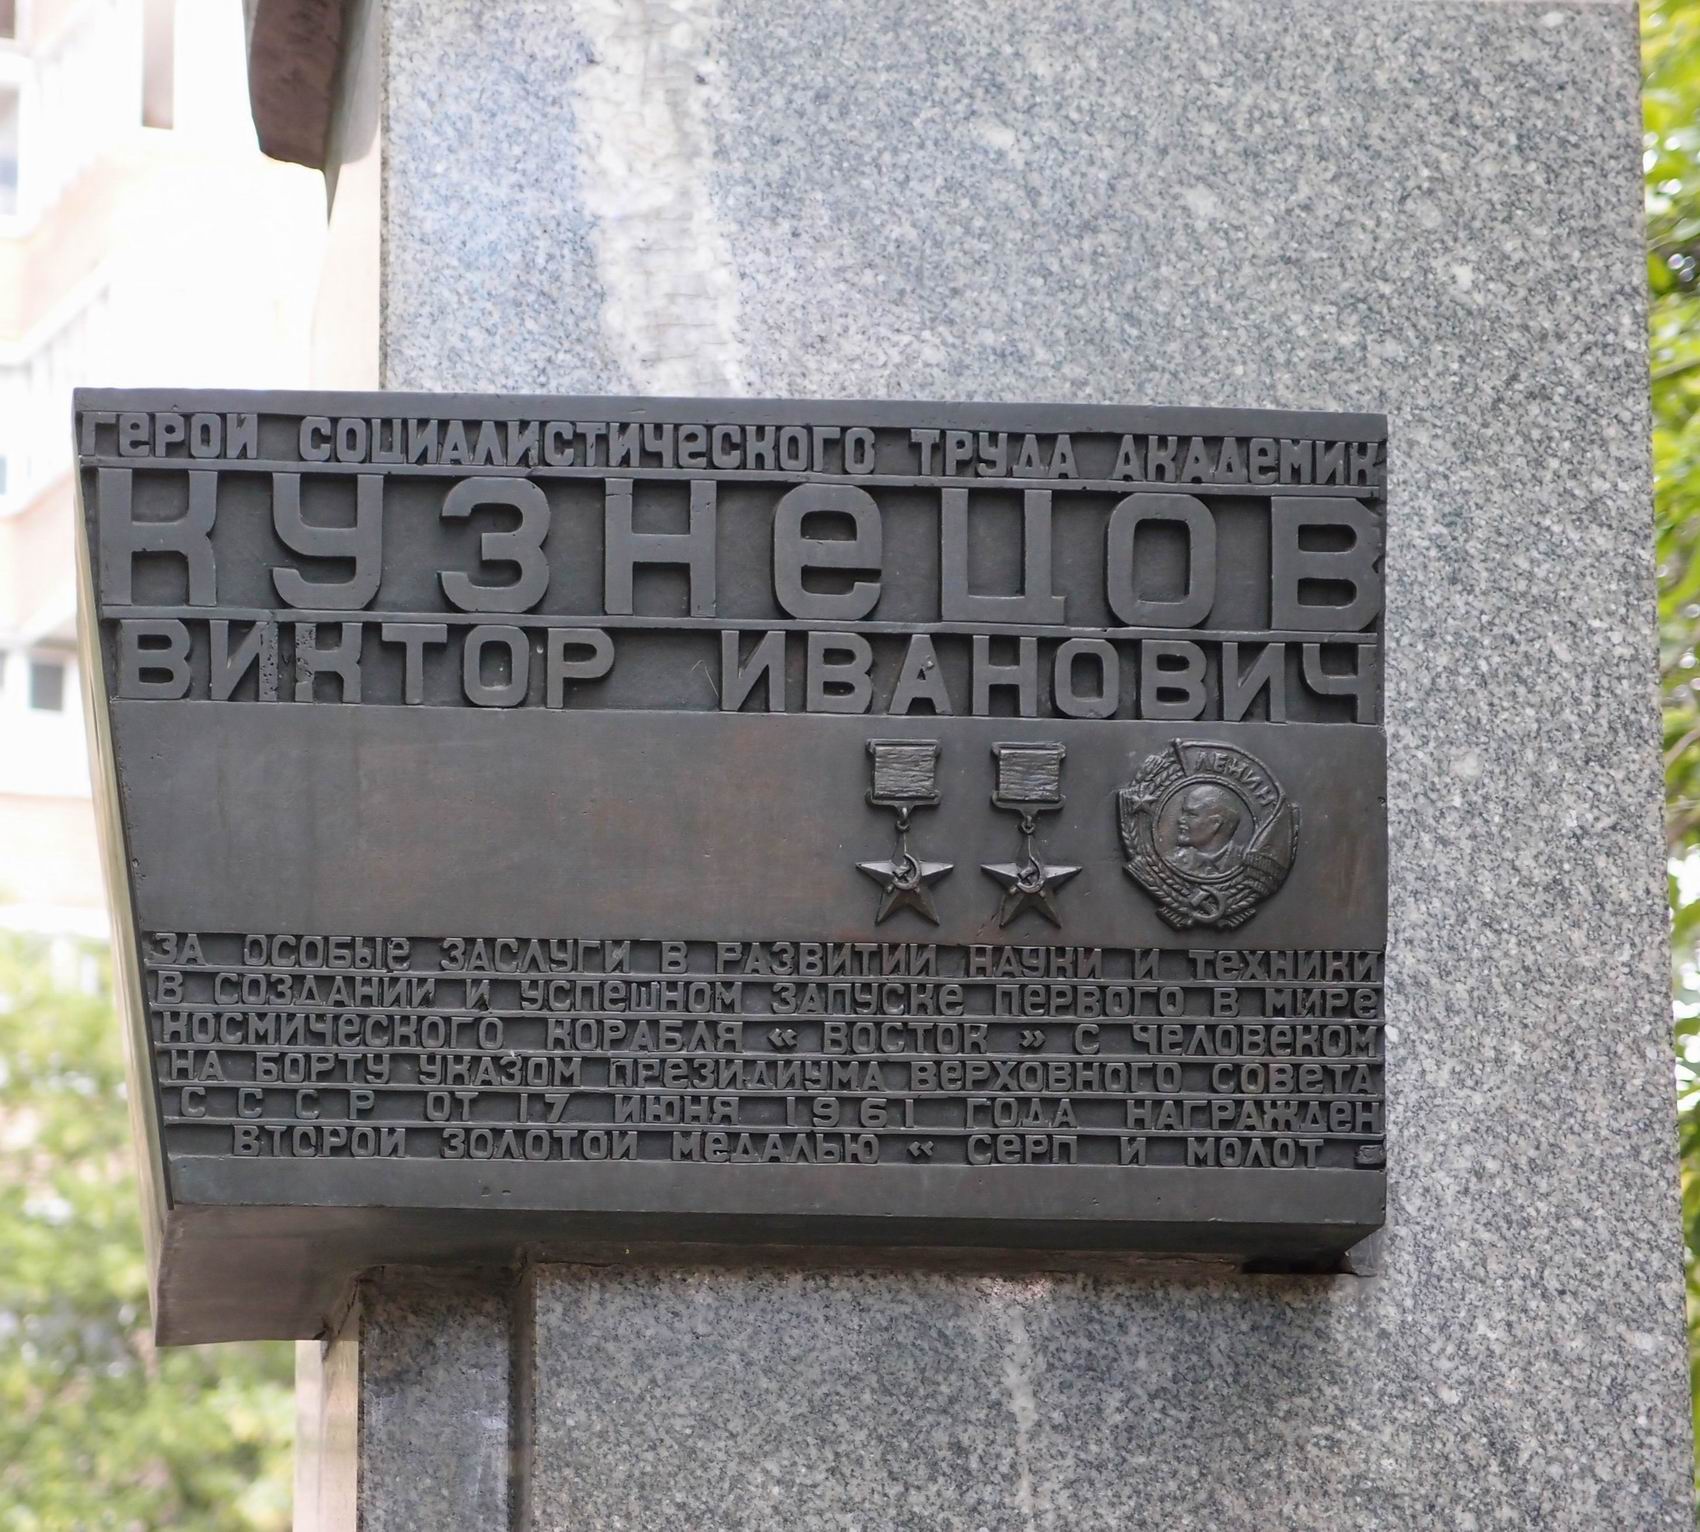 Памятник Кузнецову В.И. (1913–1991), ск. Н.А.Лавинский, арх. М.Ф Марковский, на Авиамоторной улице, открыт в 1986.